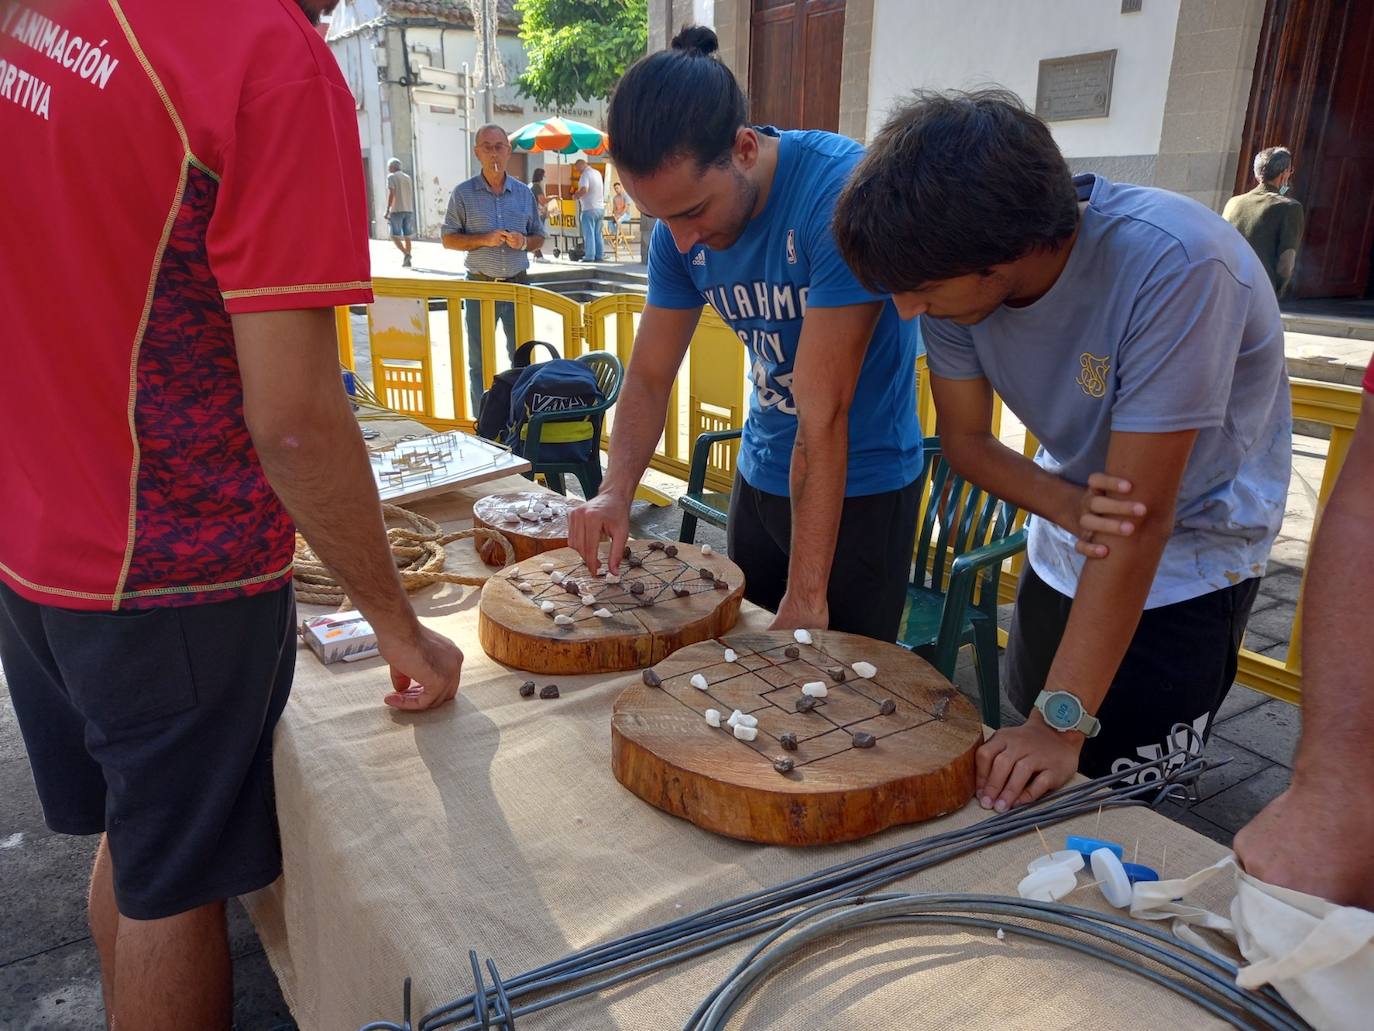 Fotos: Telde se llena de deporte, tradiciones e identidad por San Gregorio